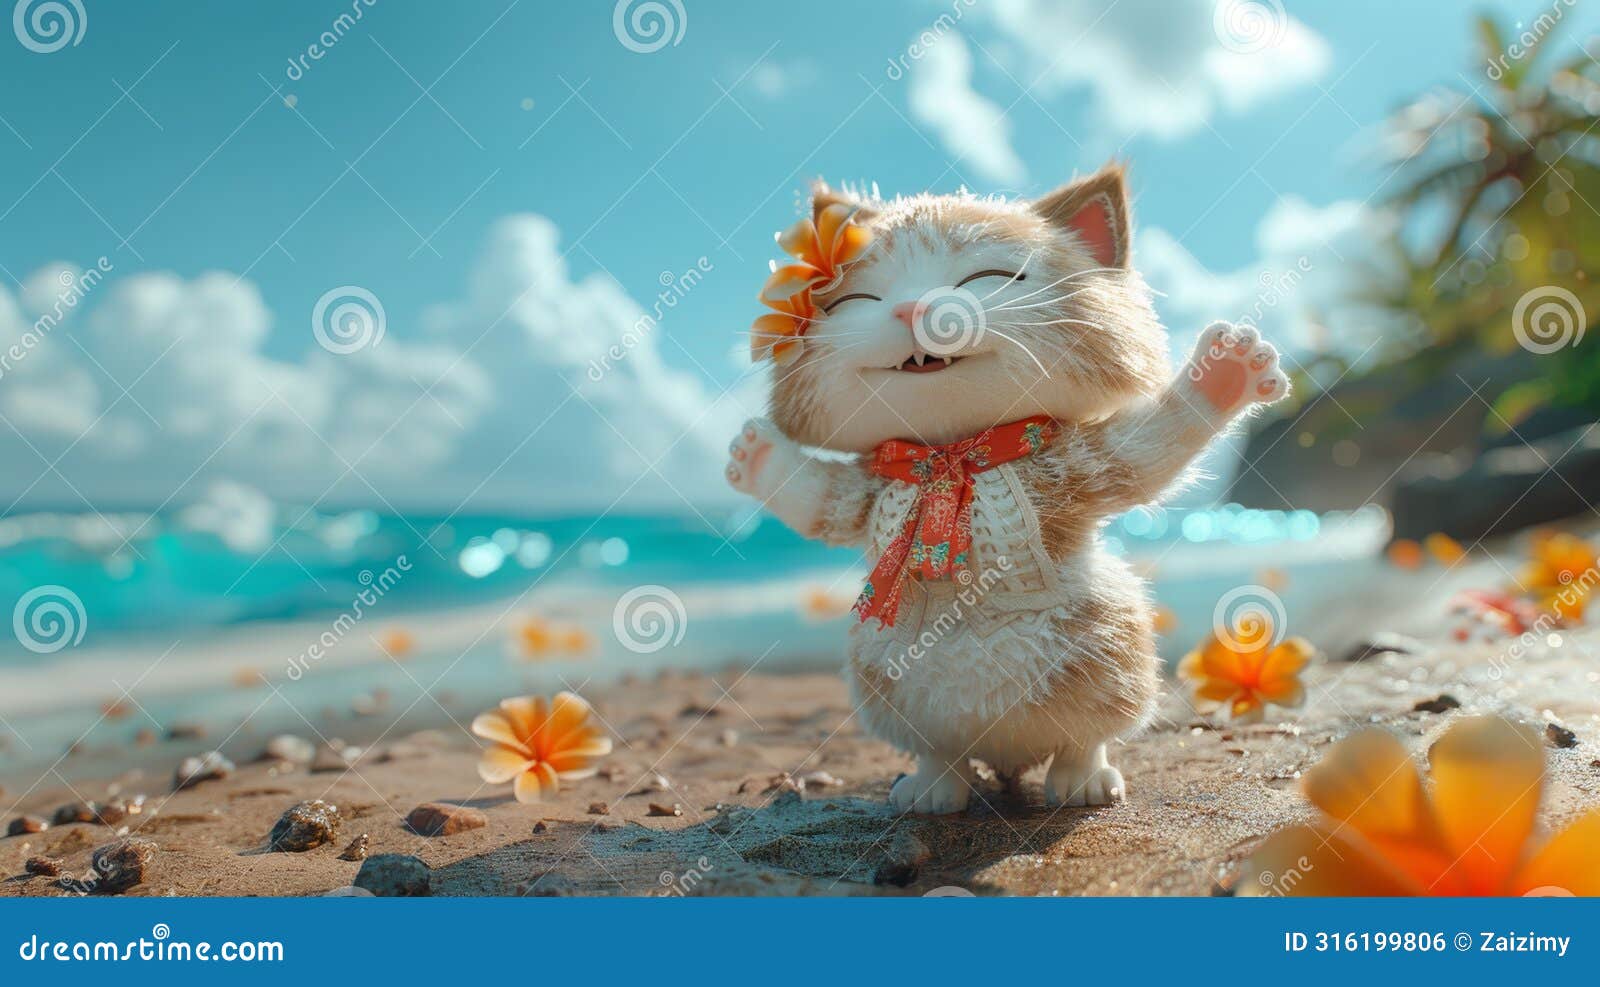 cat tropical serenade a quintet of feline mirth